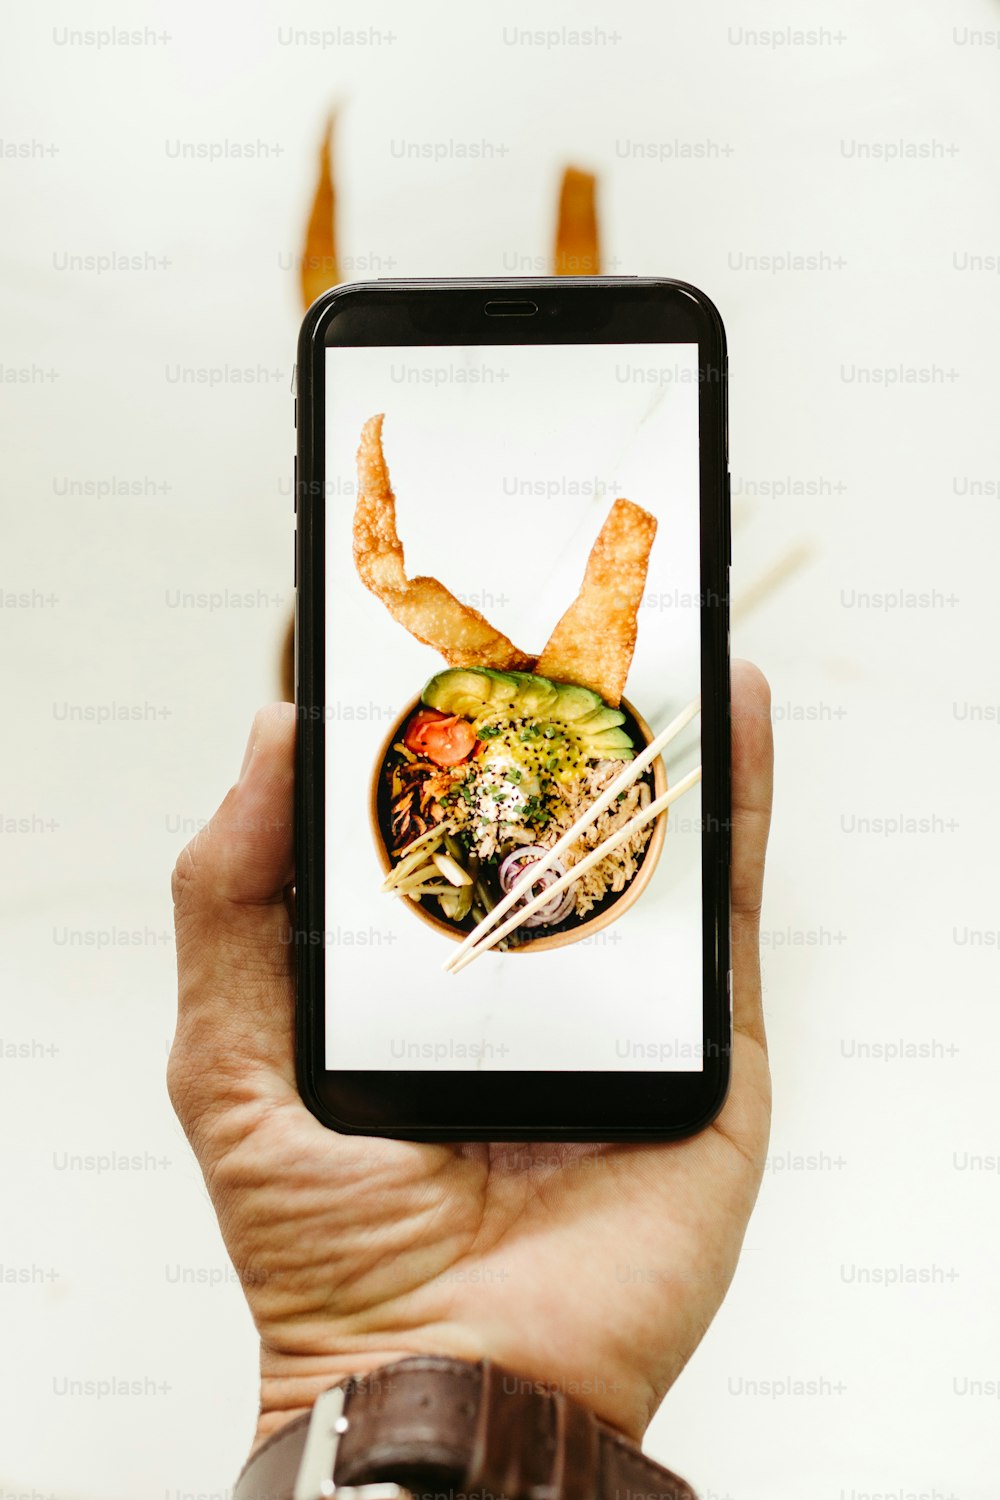 eine Person, die ein Smartphone mit einem Bild einer Schüssel mit Essen in der Hand hält